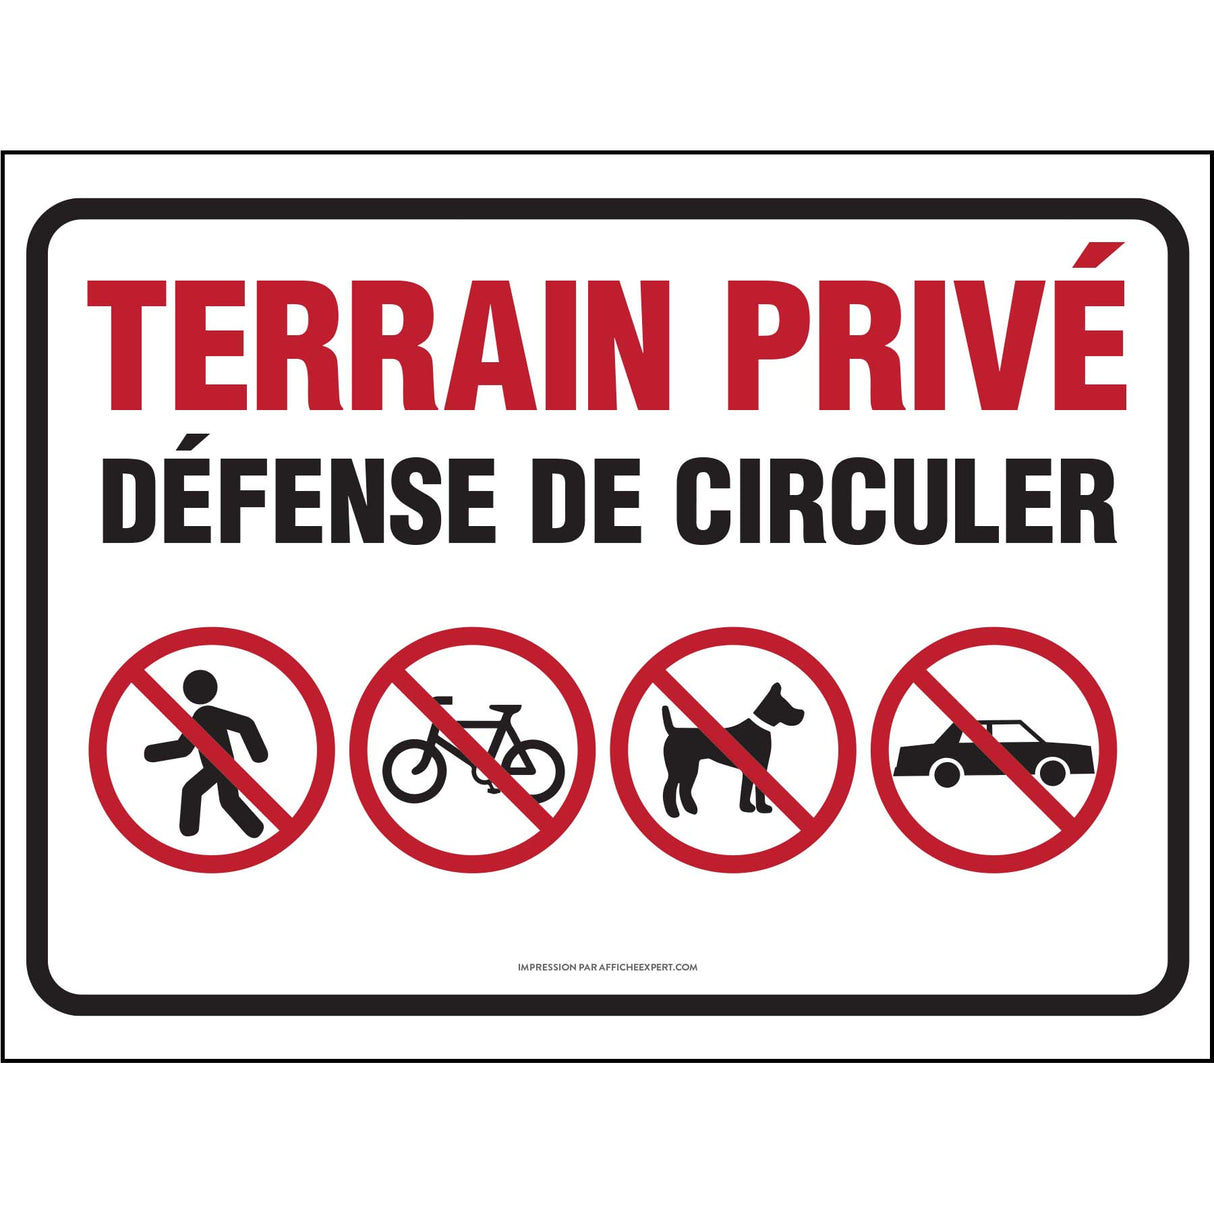 Terrain privé - Défense de circuler (Piétons, vélos, chiens et voitures)